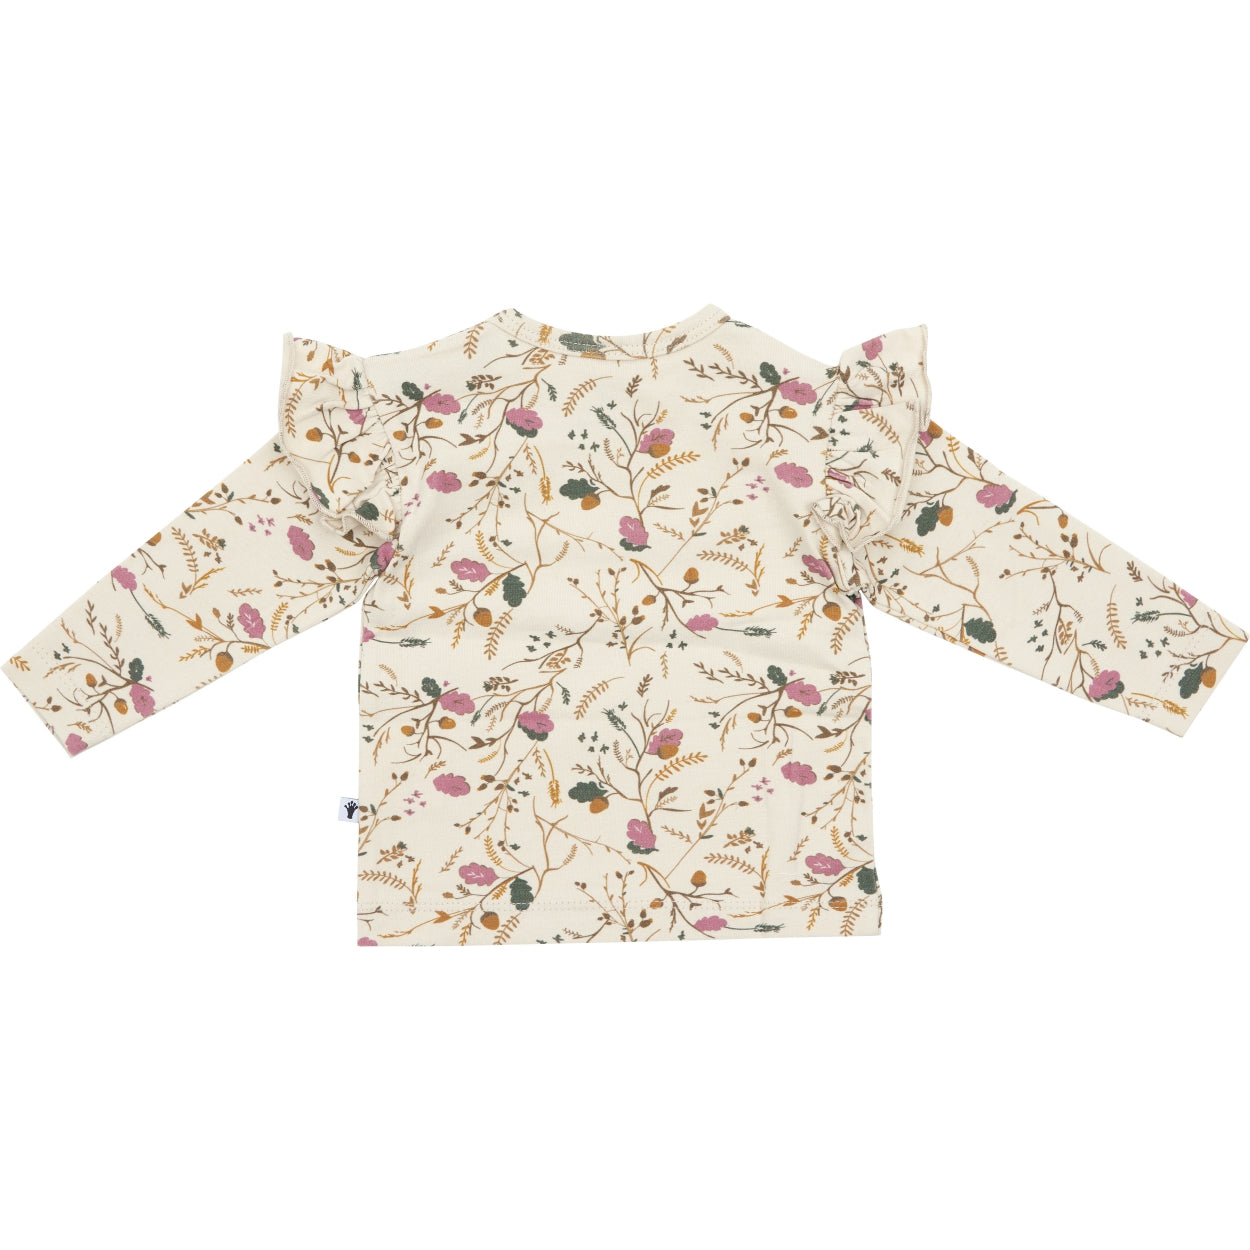 Meisjes Shirt Ruffle van Klein Baby in de kleur AOP Flower/Acorn in maat 86.